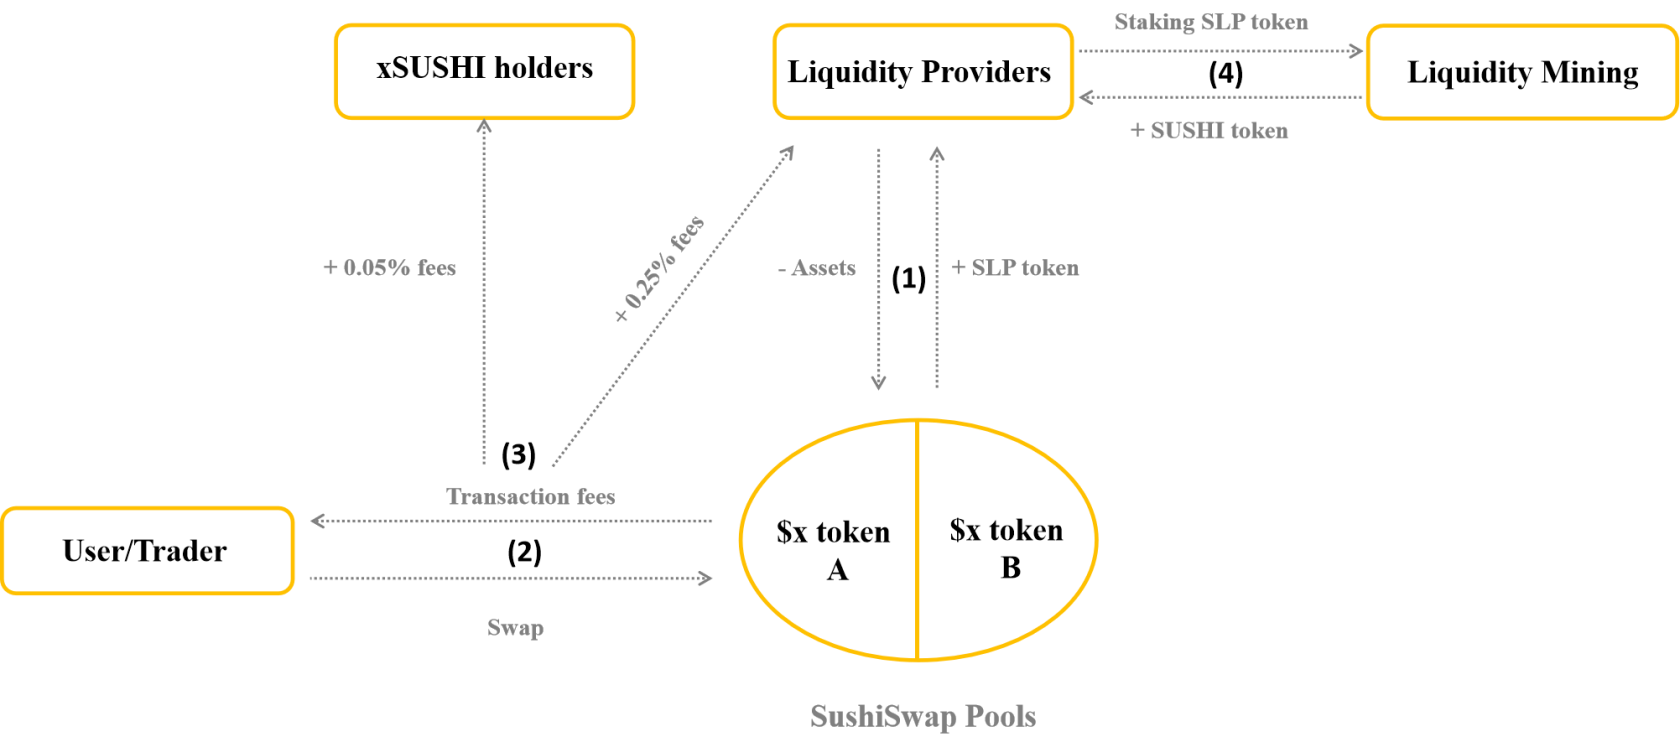 Analisis model pengendalian SushiSwap – Model berbilang produk